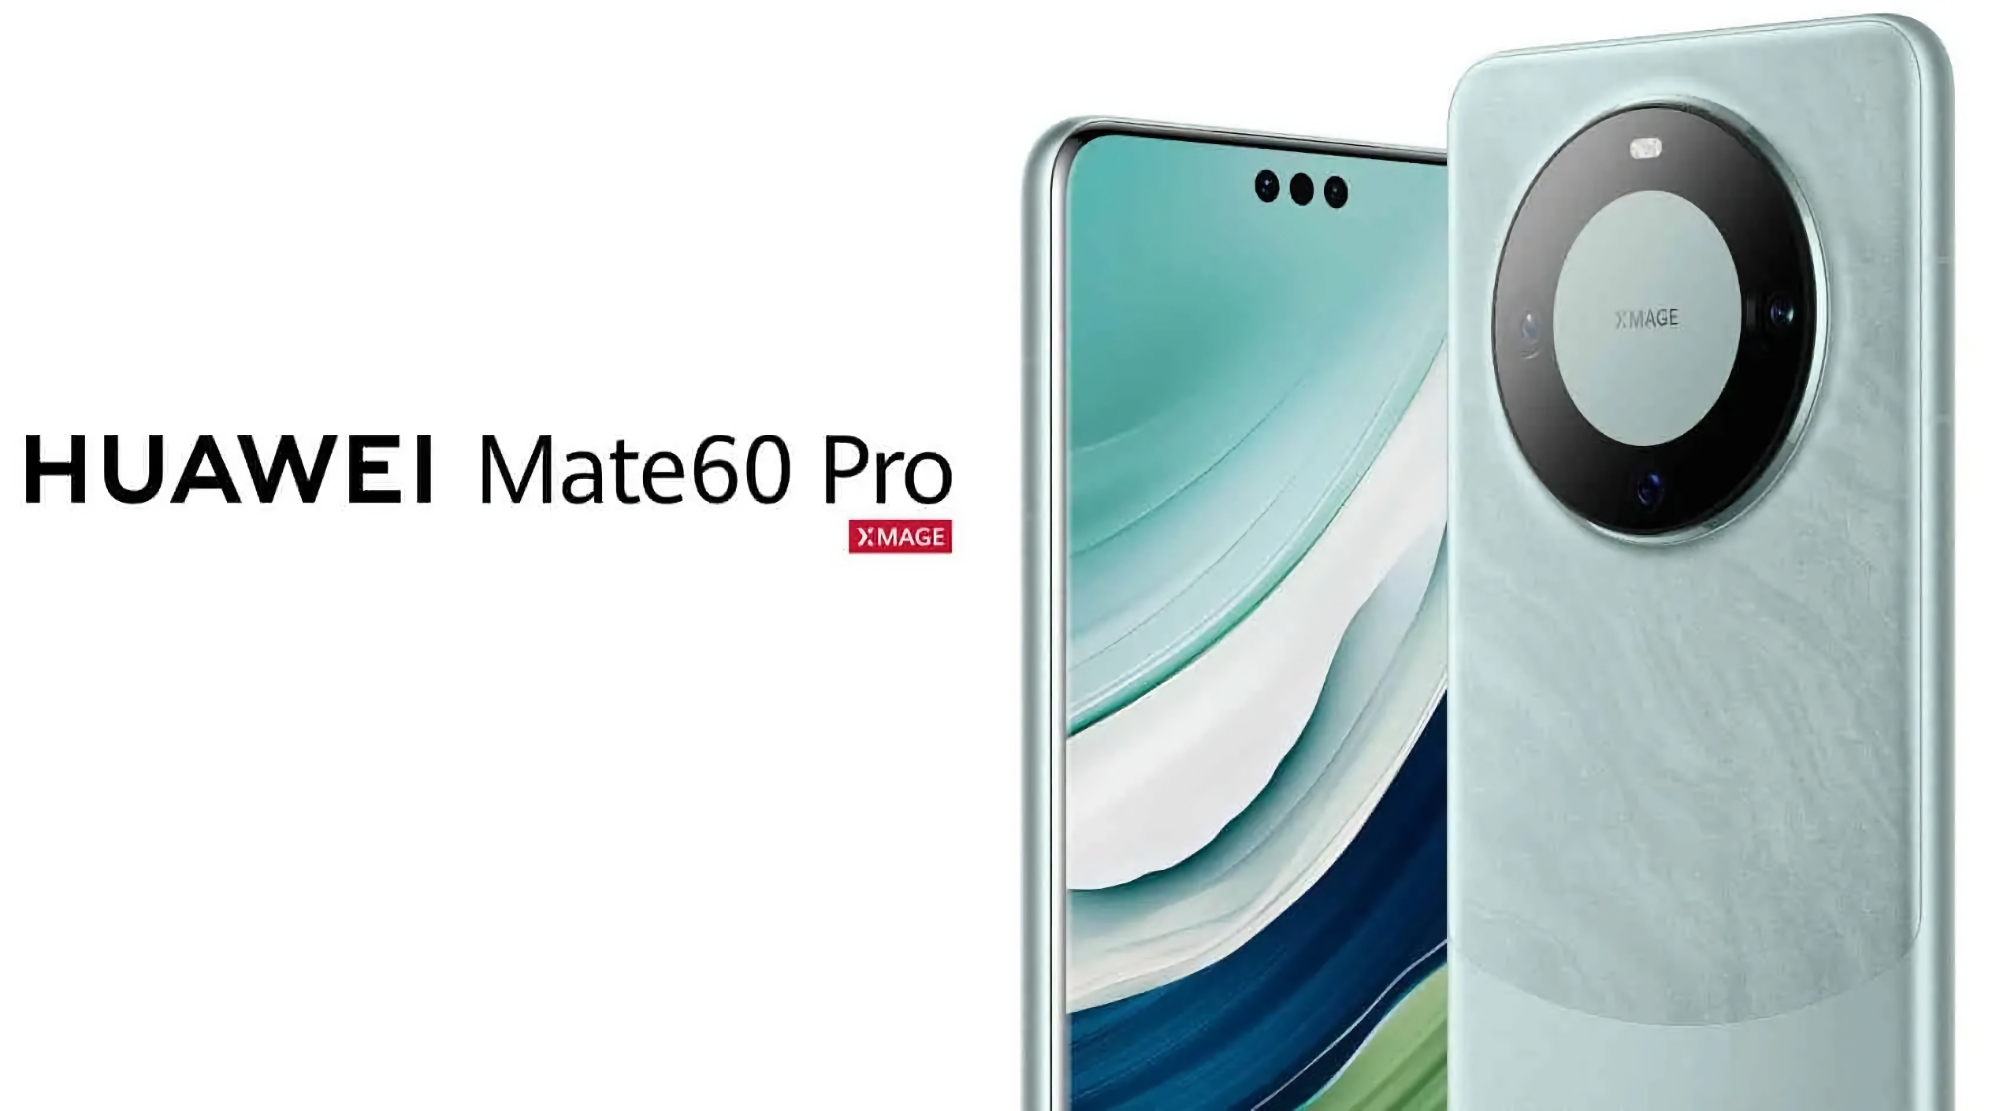 Det er officielt: Huawei Mate 60 Pro med satellitforbindelse og tre huller i skærmen bliver ikke frigivet på det globale marked